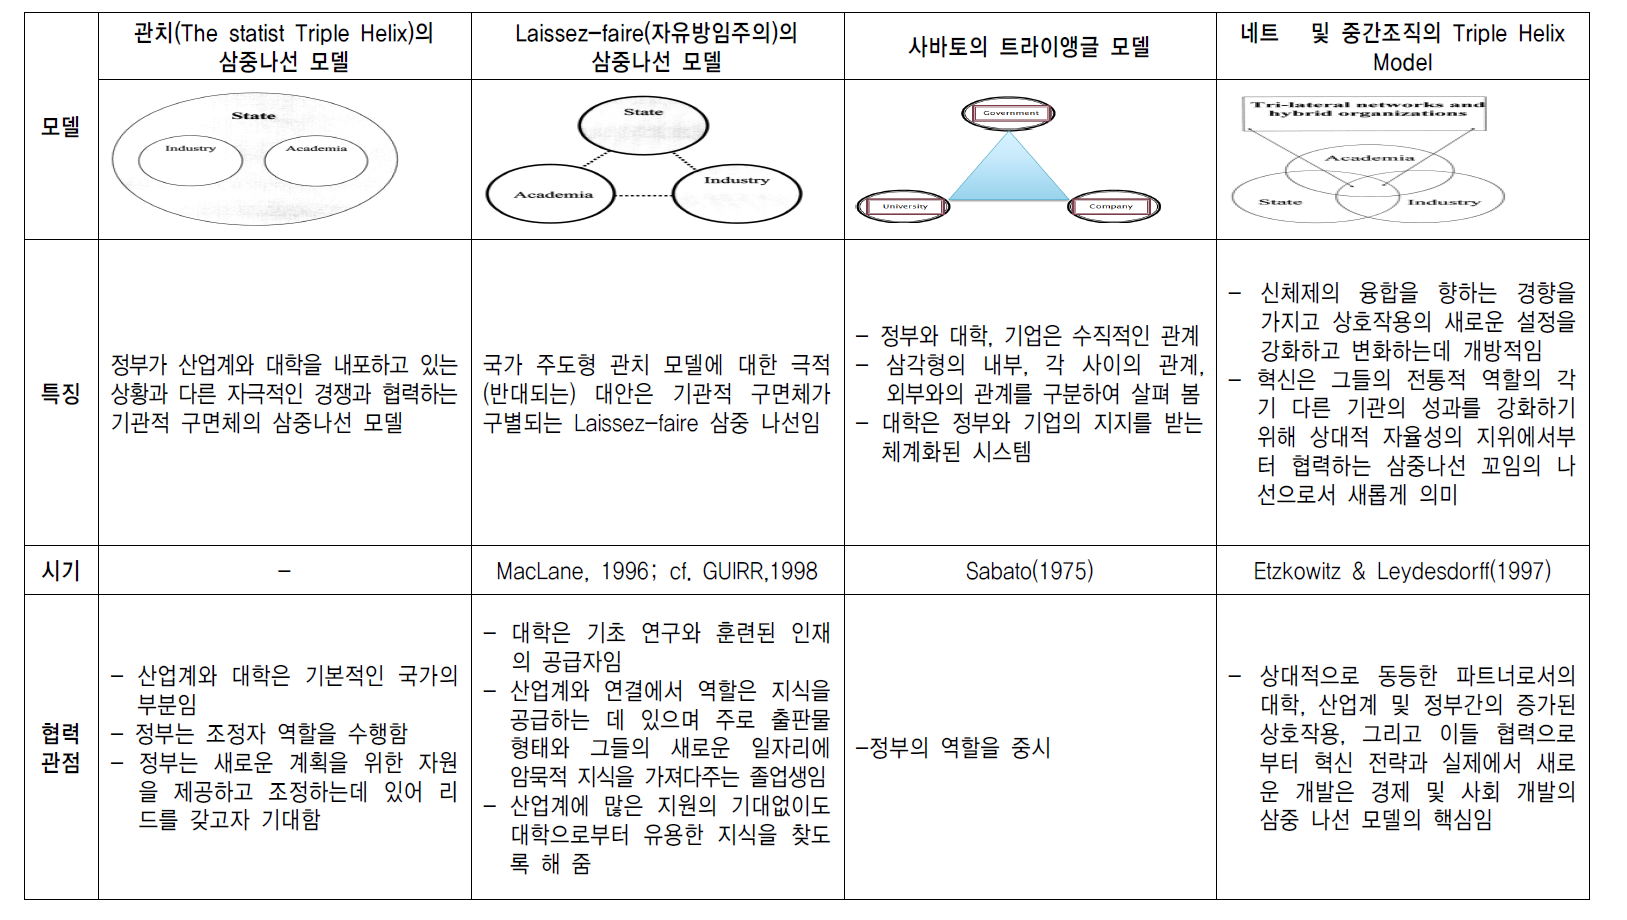 Triple Helix 모델의 진화 과정